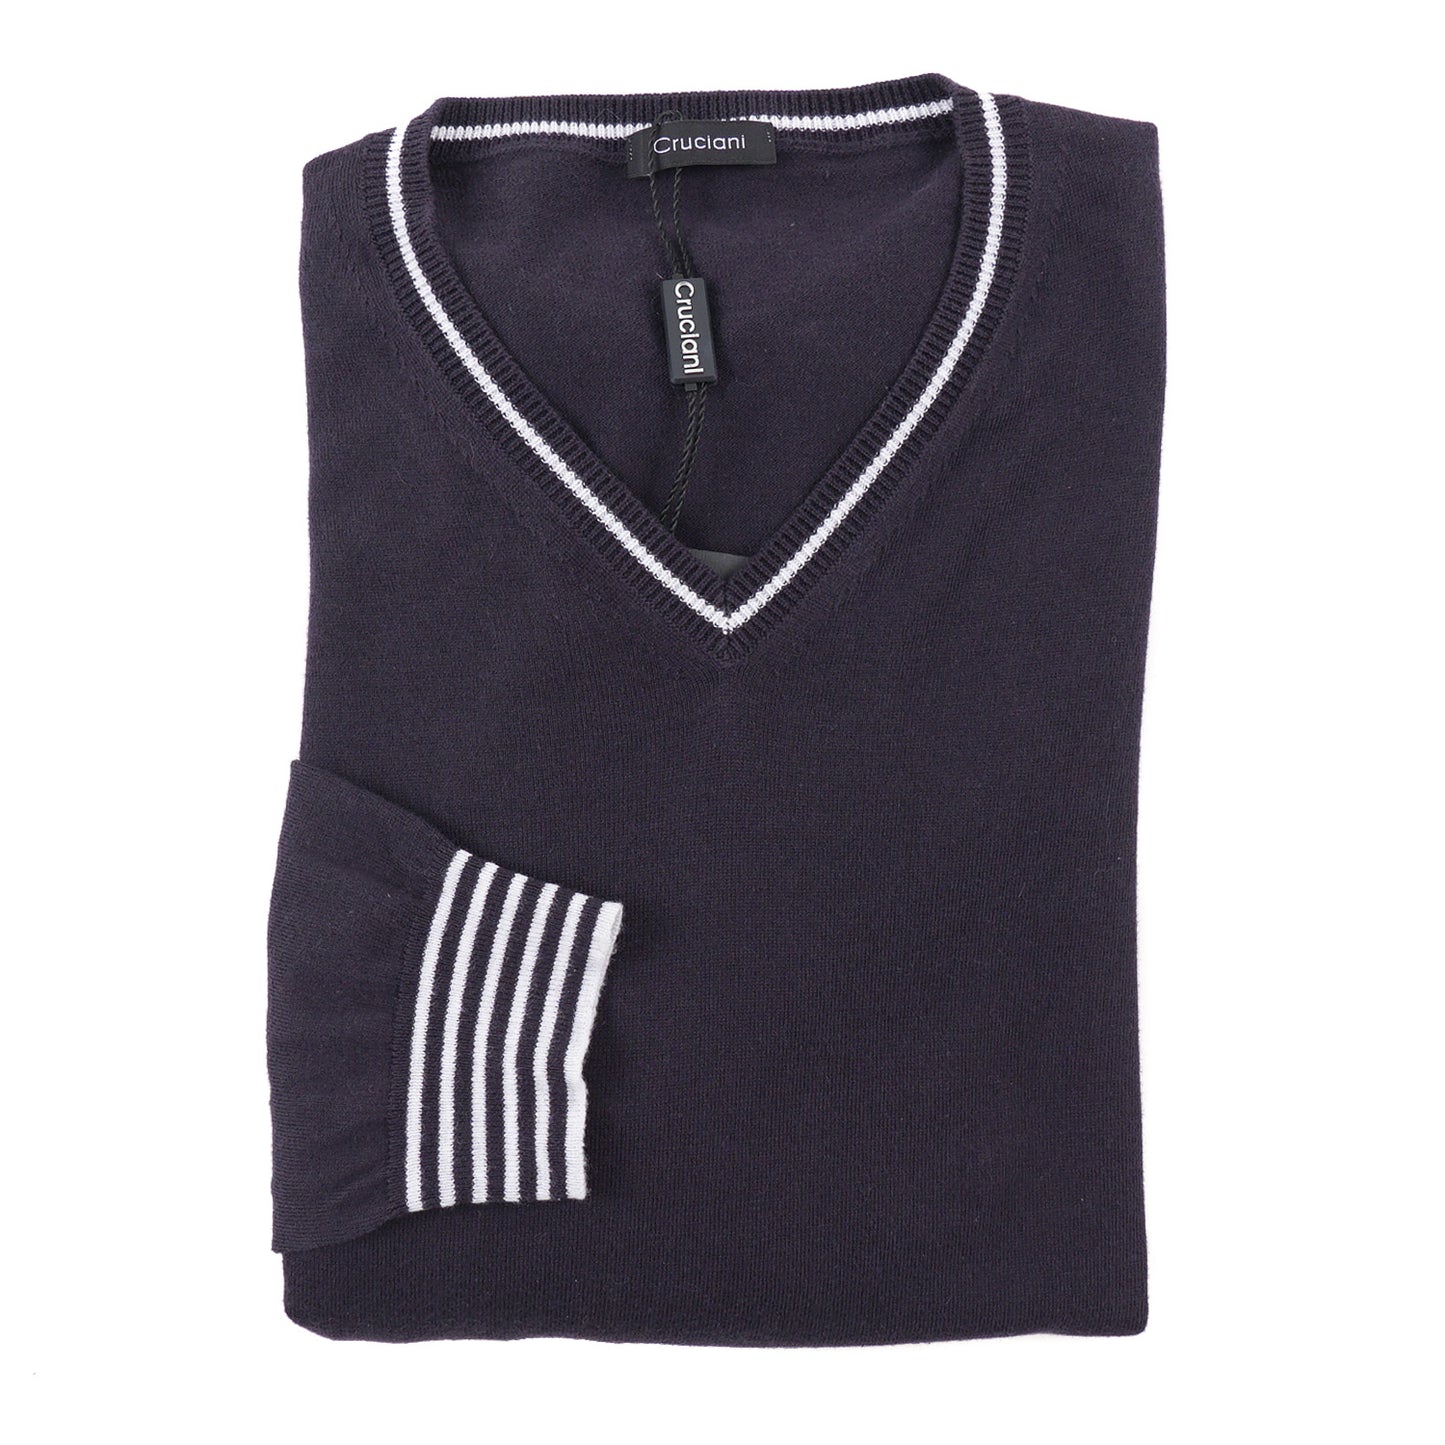 Cruciani Contrast Knit Cotton Sweater - Top Shelf Apparel